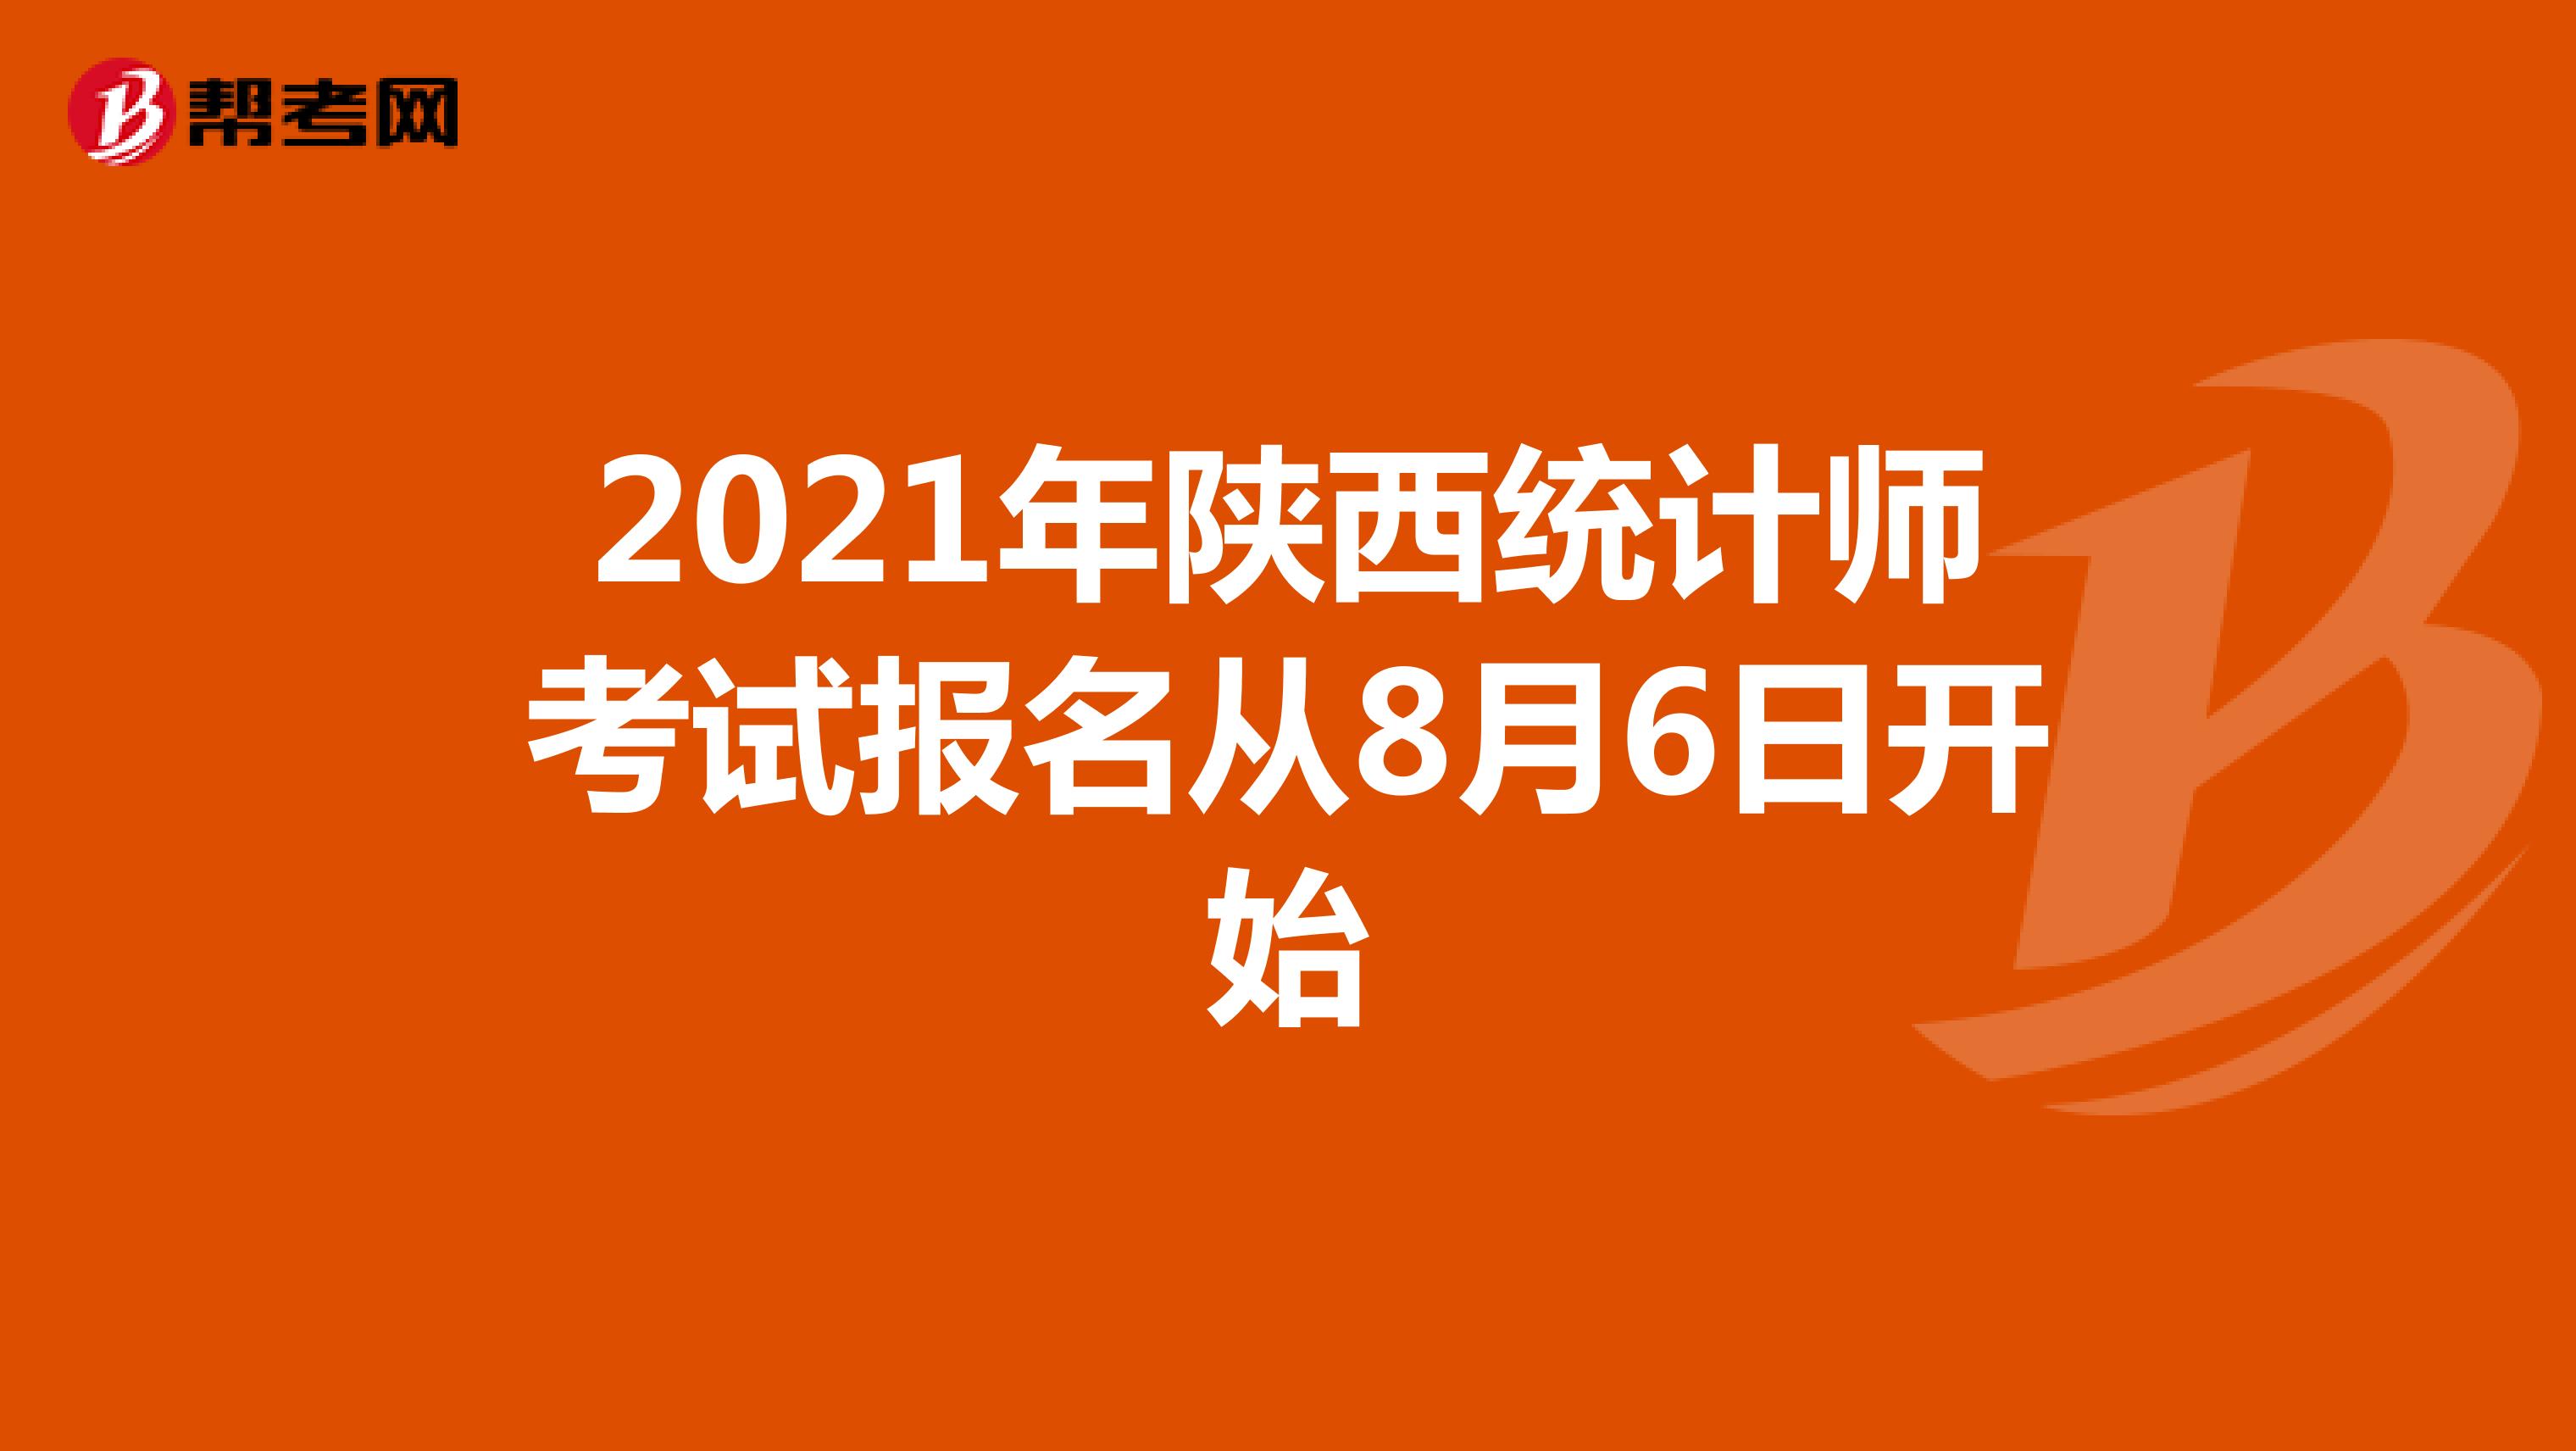 2021年陕西统计师考试报名从8月6日开始